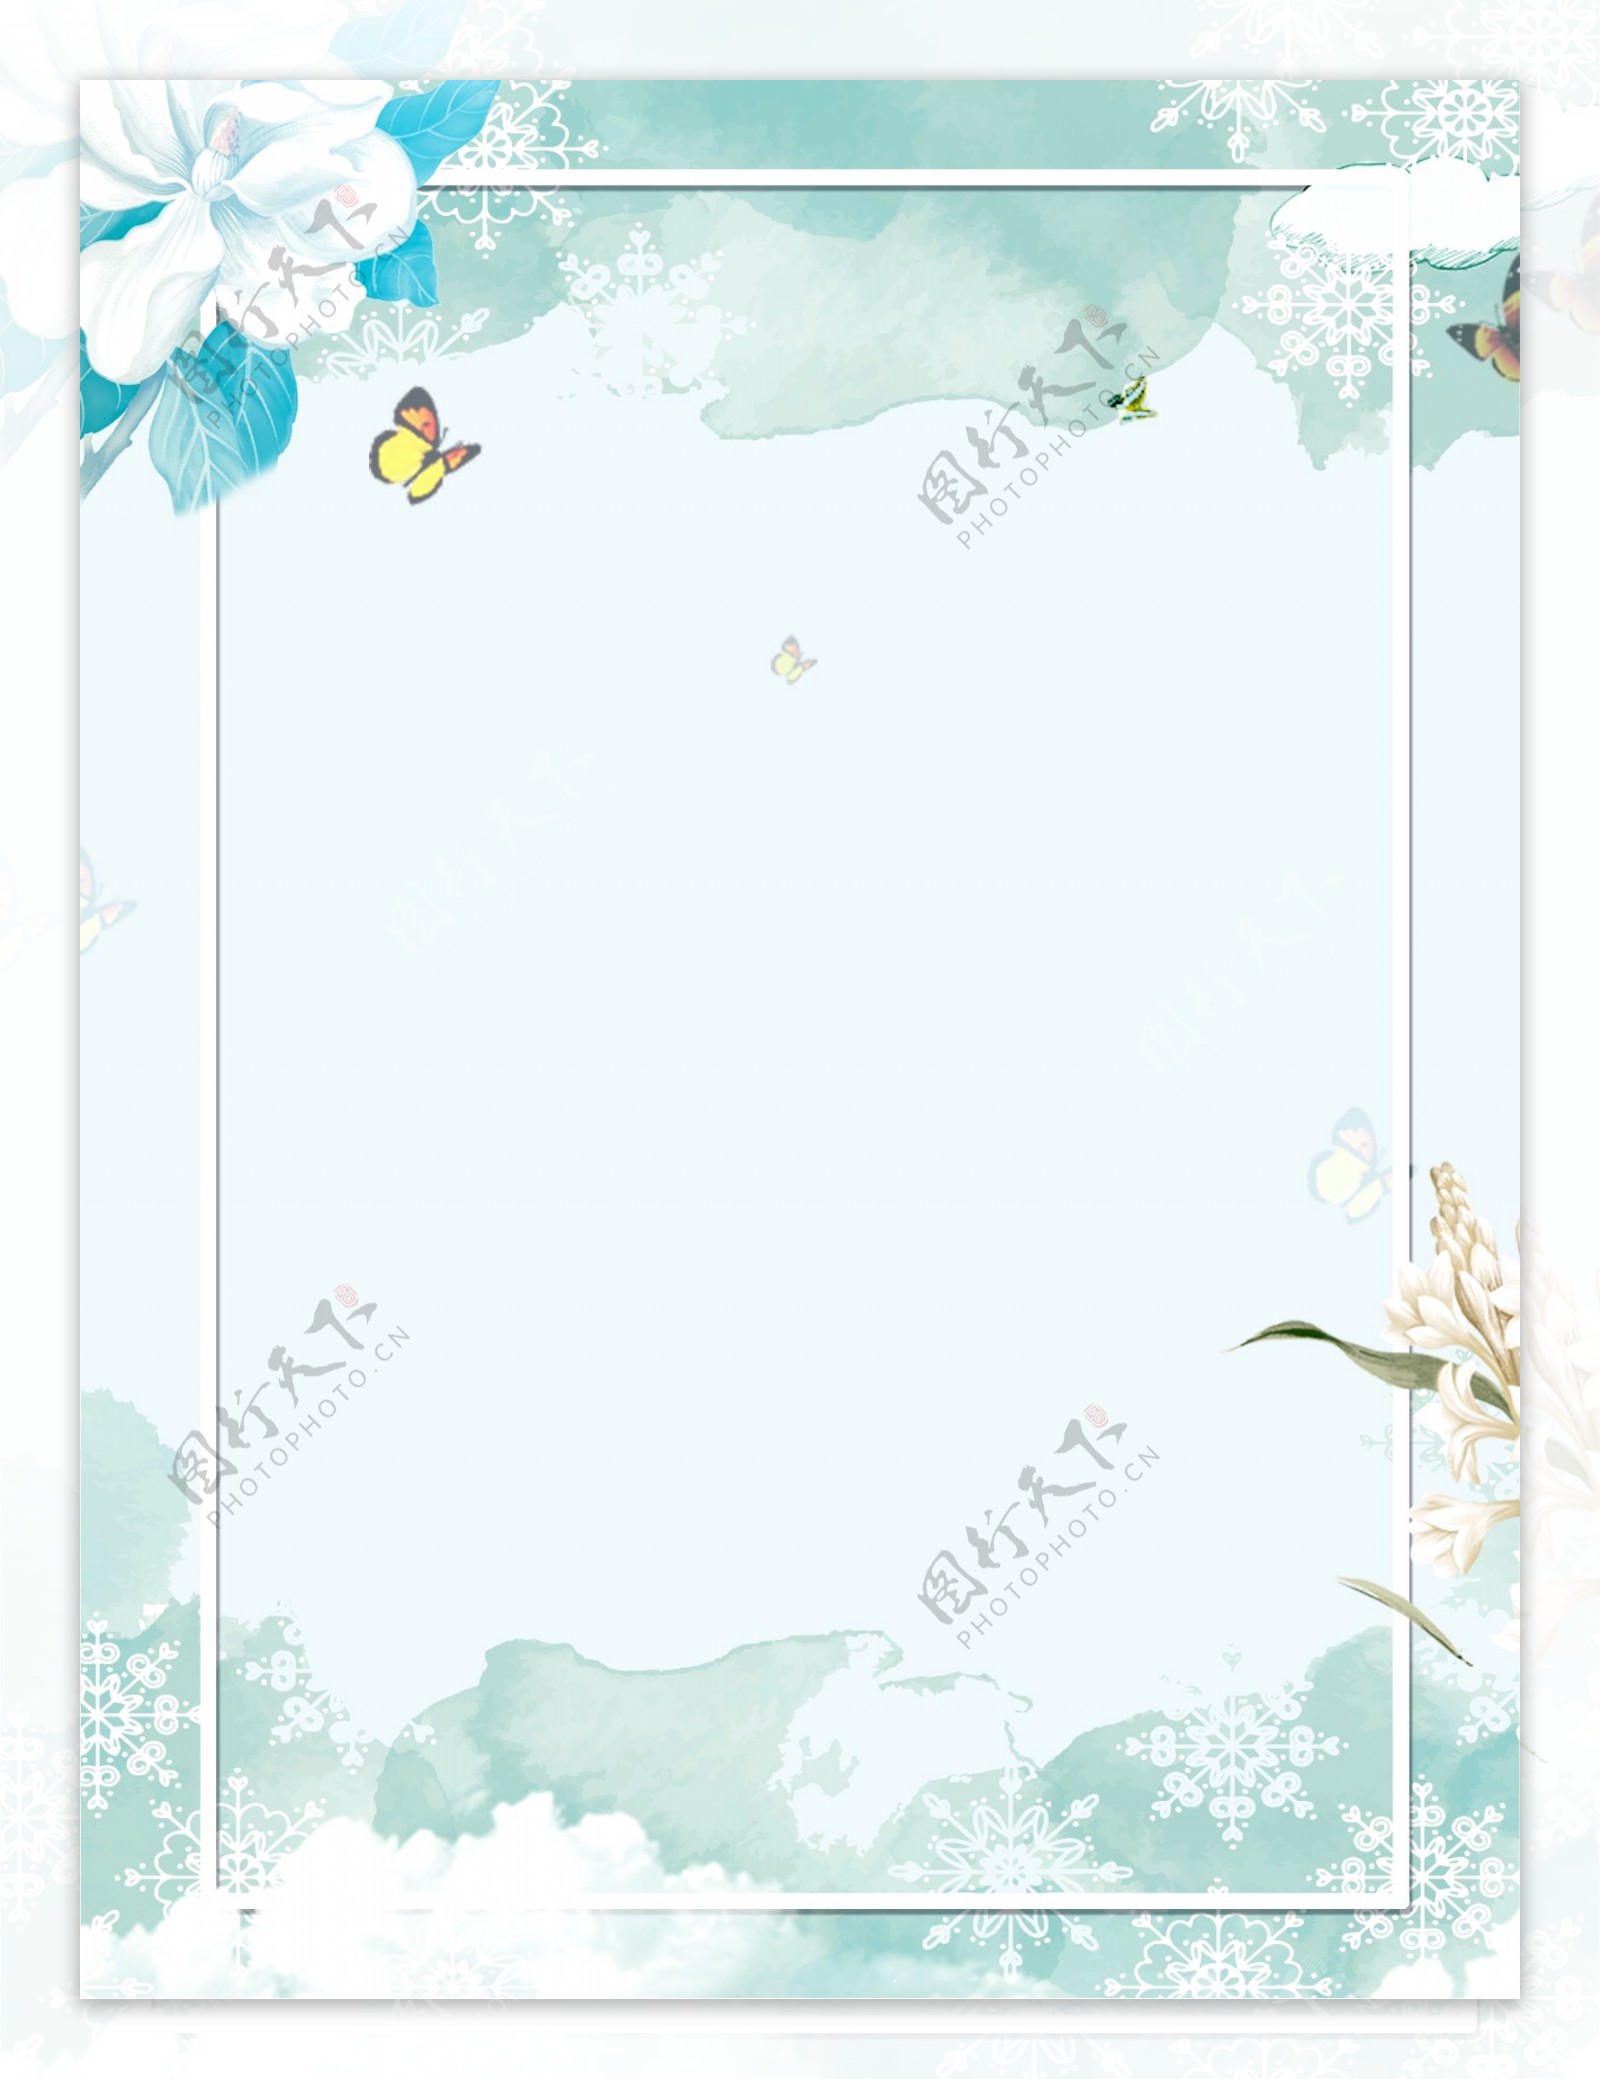 彩绘冬季蝴蝶花朵边框背景素材